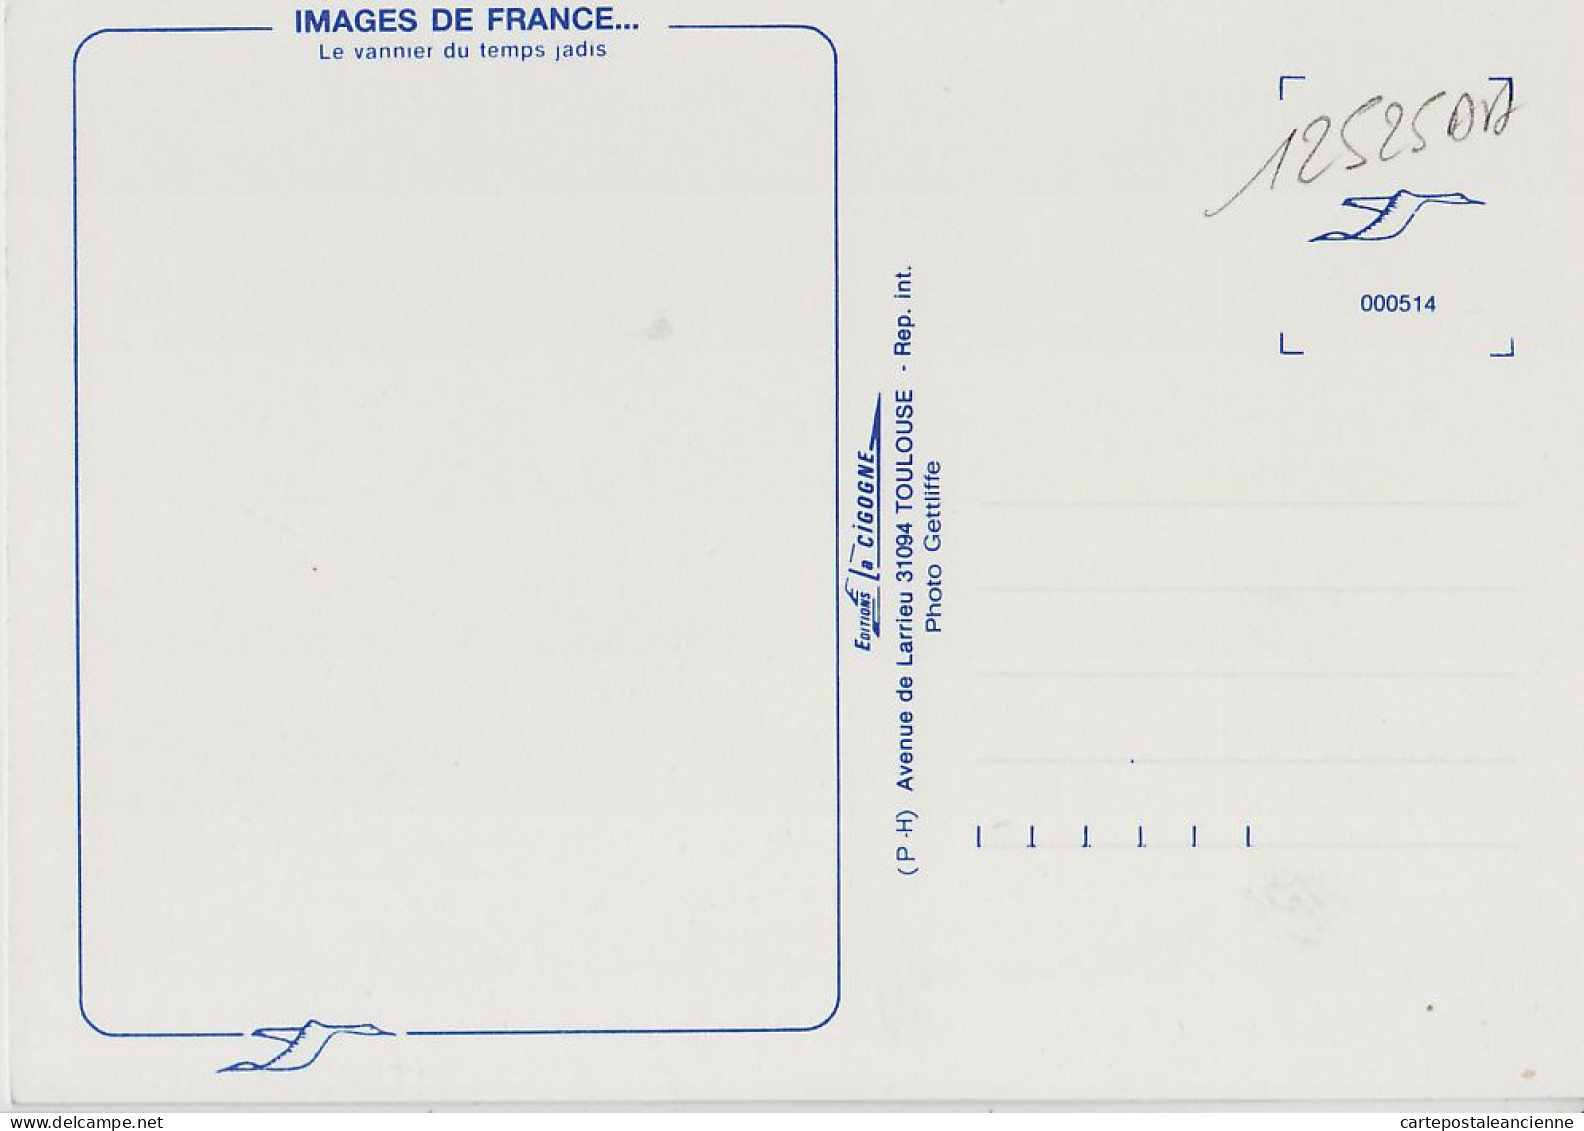 05451 / Midi-Pyrénées Le VANNIER Du Temps Jadis Artisanat Metier 1980s- IRIS CIGOGNE Toulouse Cpagr - Farmers